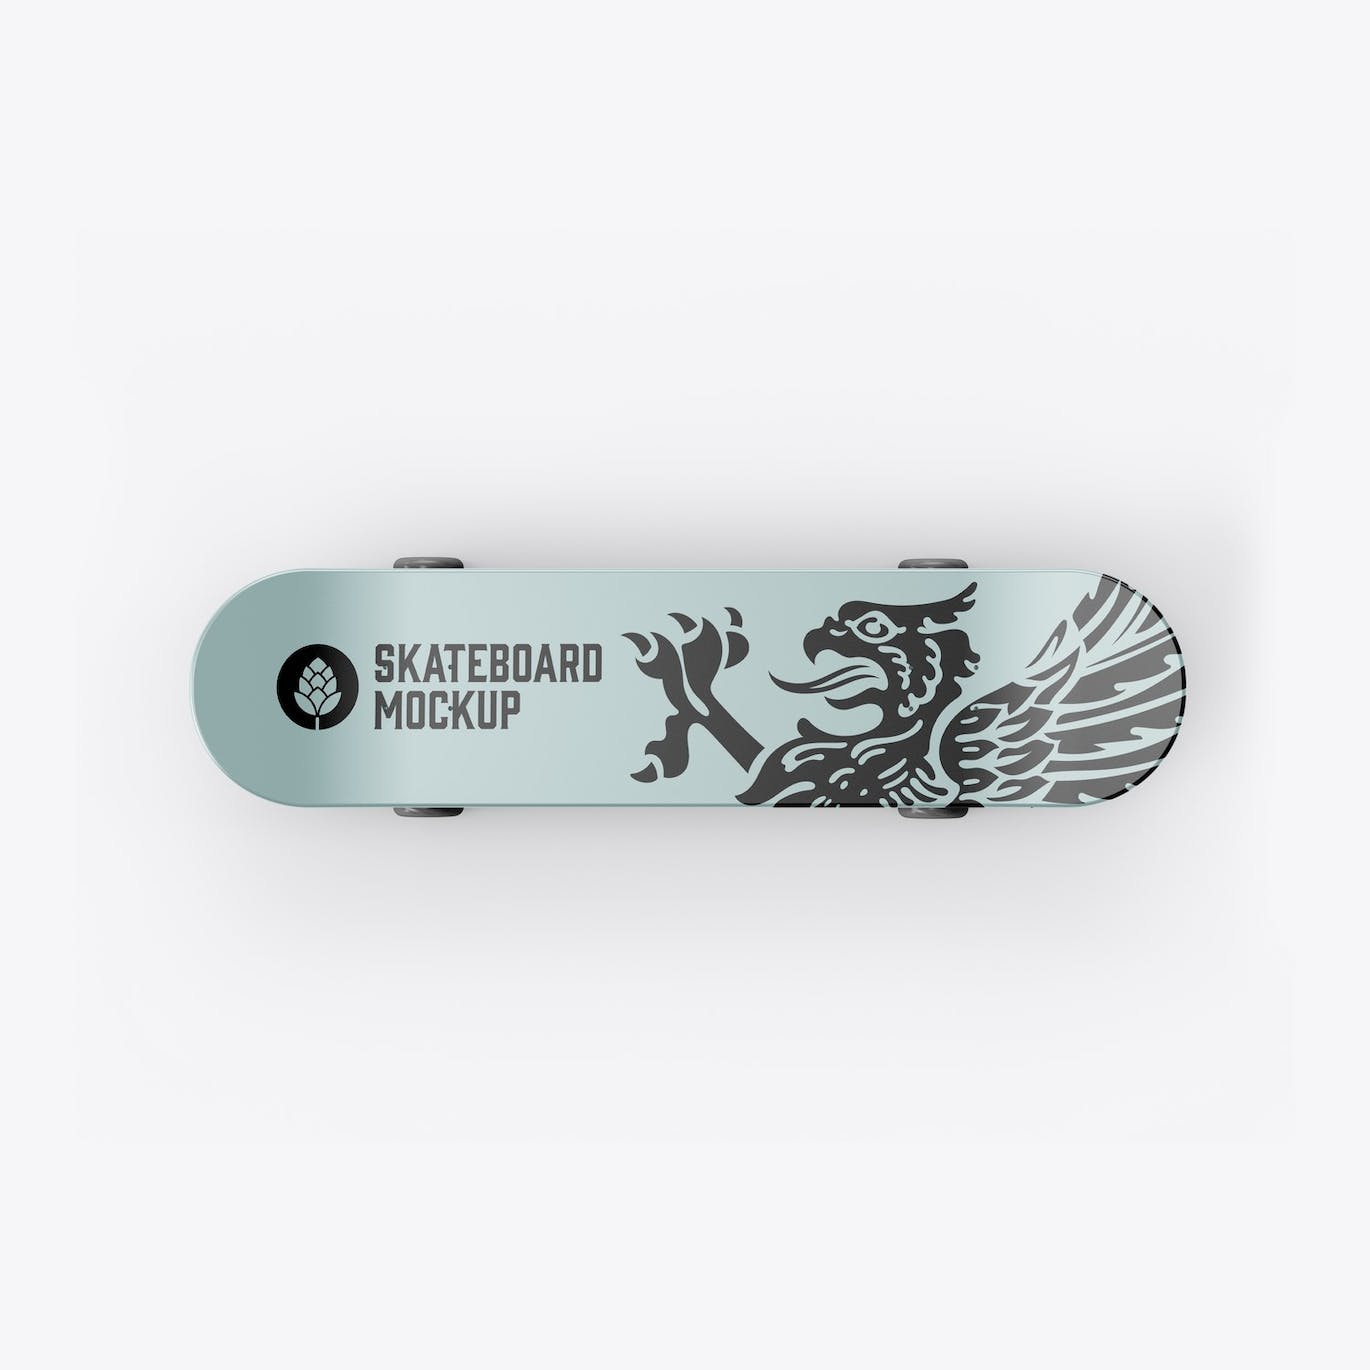 骑行滑板品牌设计样机 Skateboard Mockup 样机素材 第7张